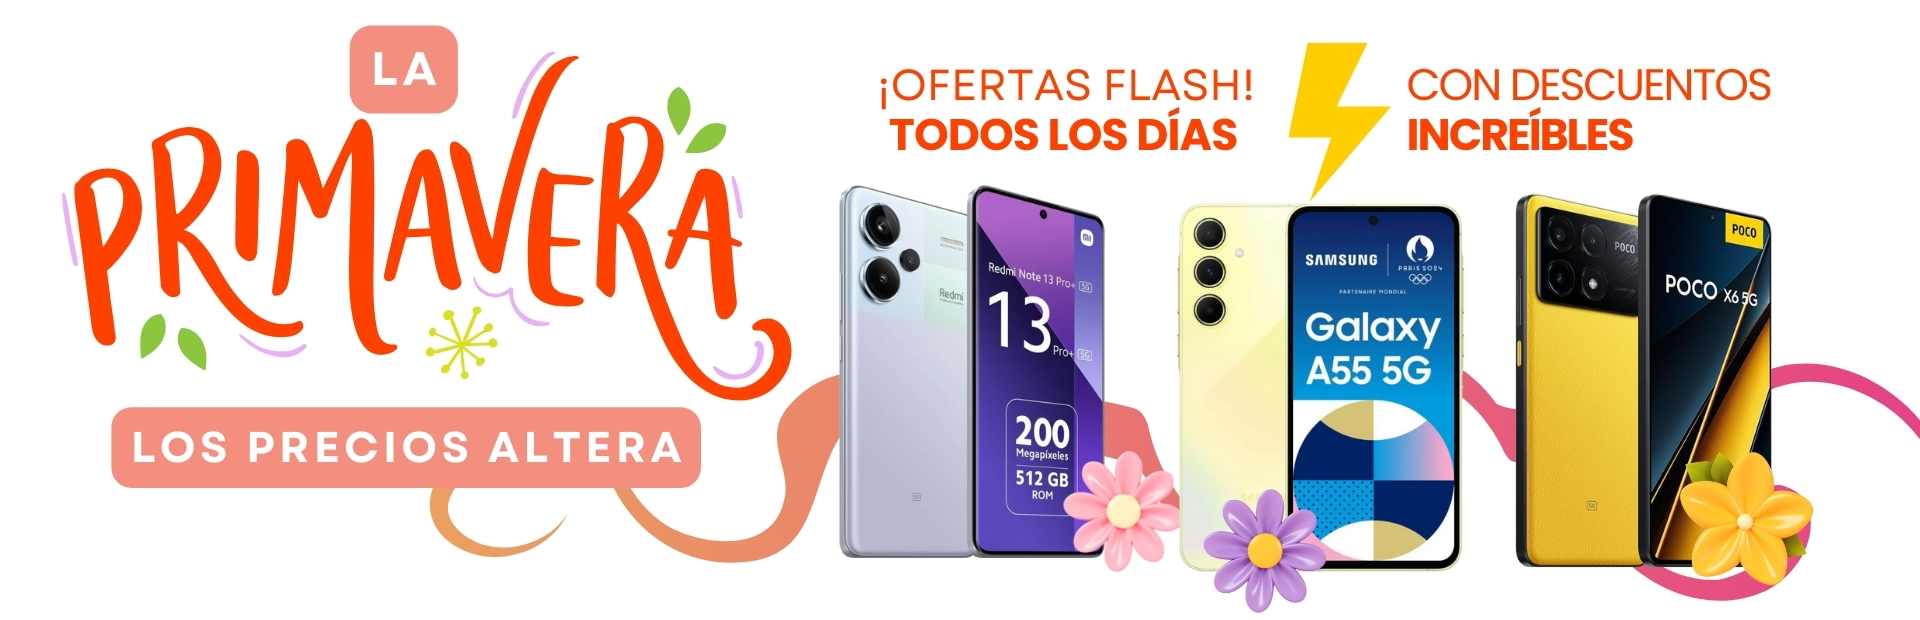 Descuentos Ofertas flash en móviles Xiaomi, Samsung y iPhone